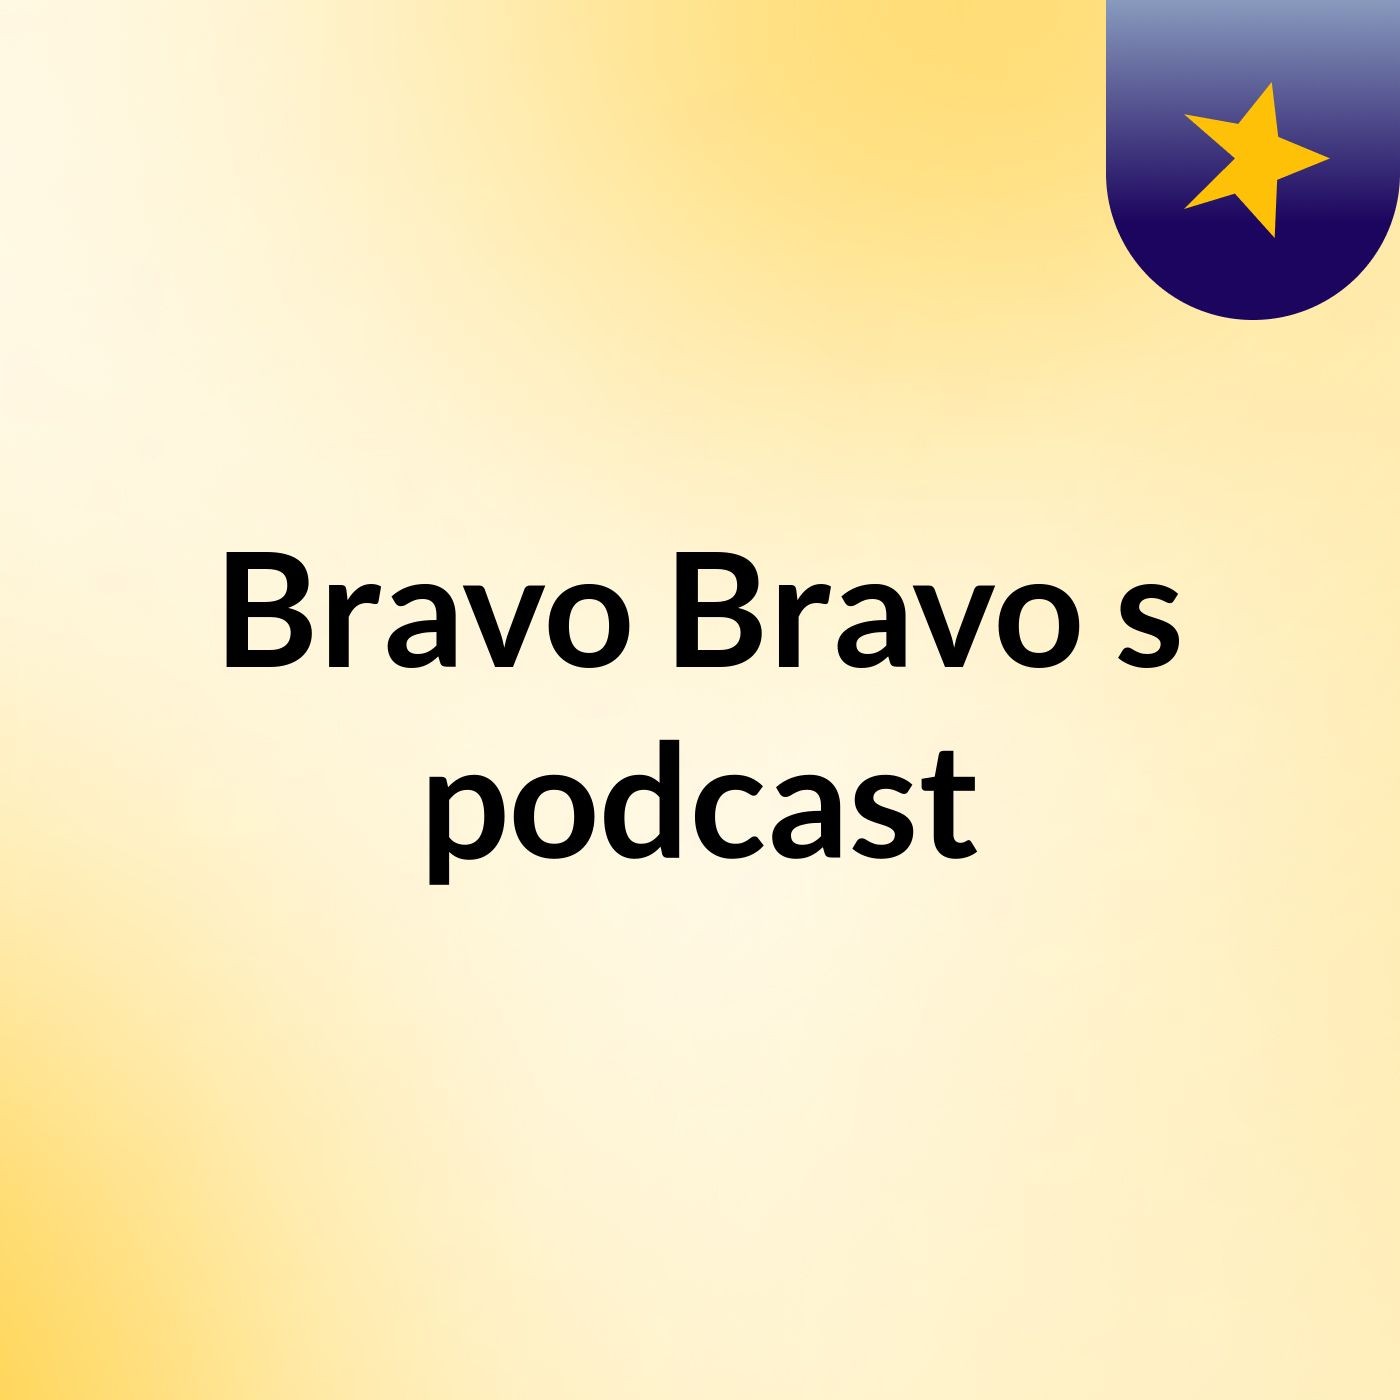 Bravo Bravo's podcast